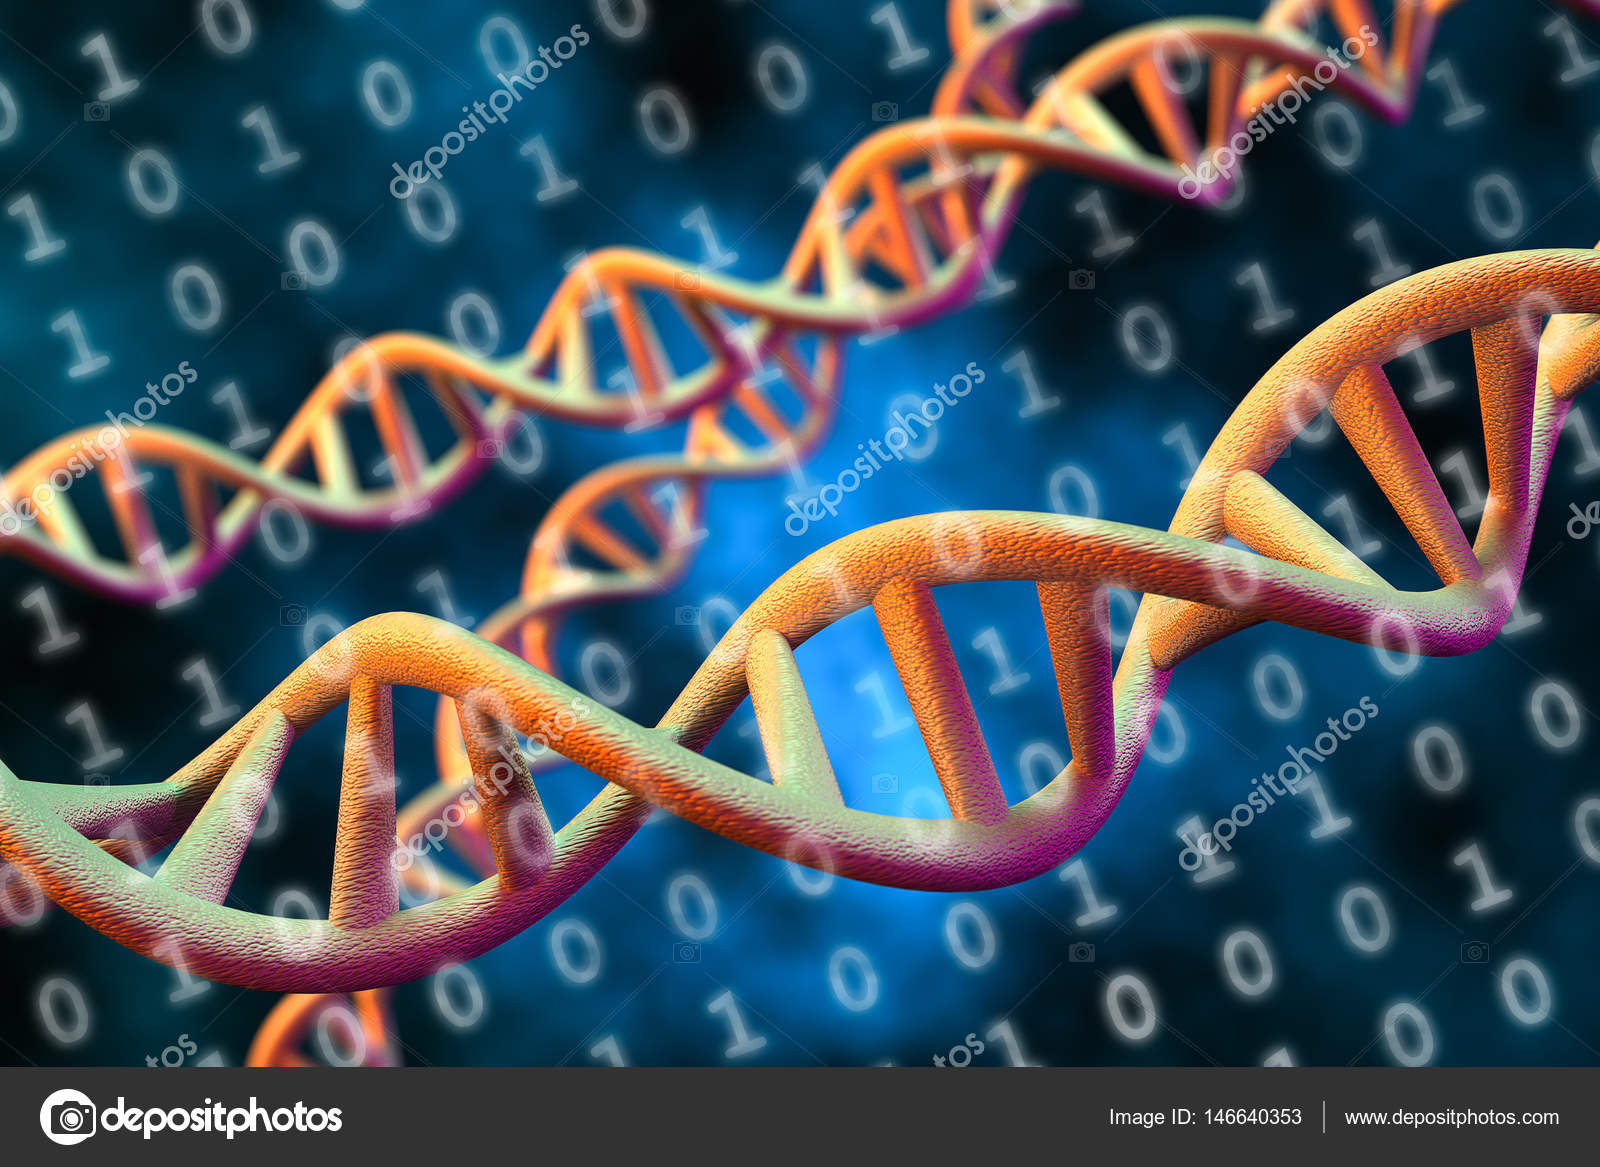 Математическая генетика. Секвенирование генетика. Молекулярная биология биоинформатика. Молекулярная биология и генетика. ДНК молекула двигающаяся.